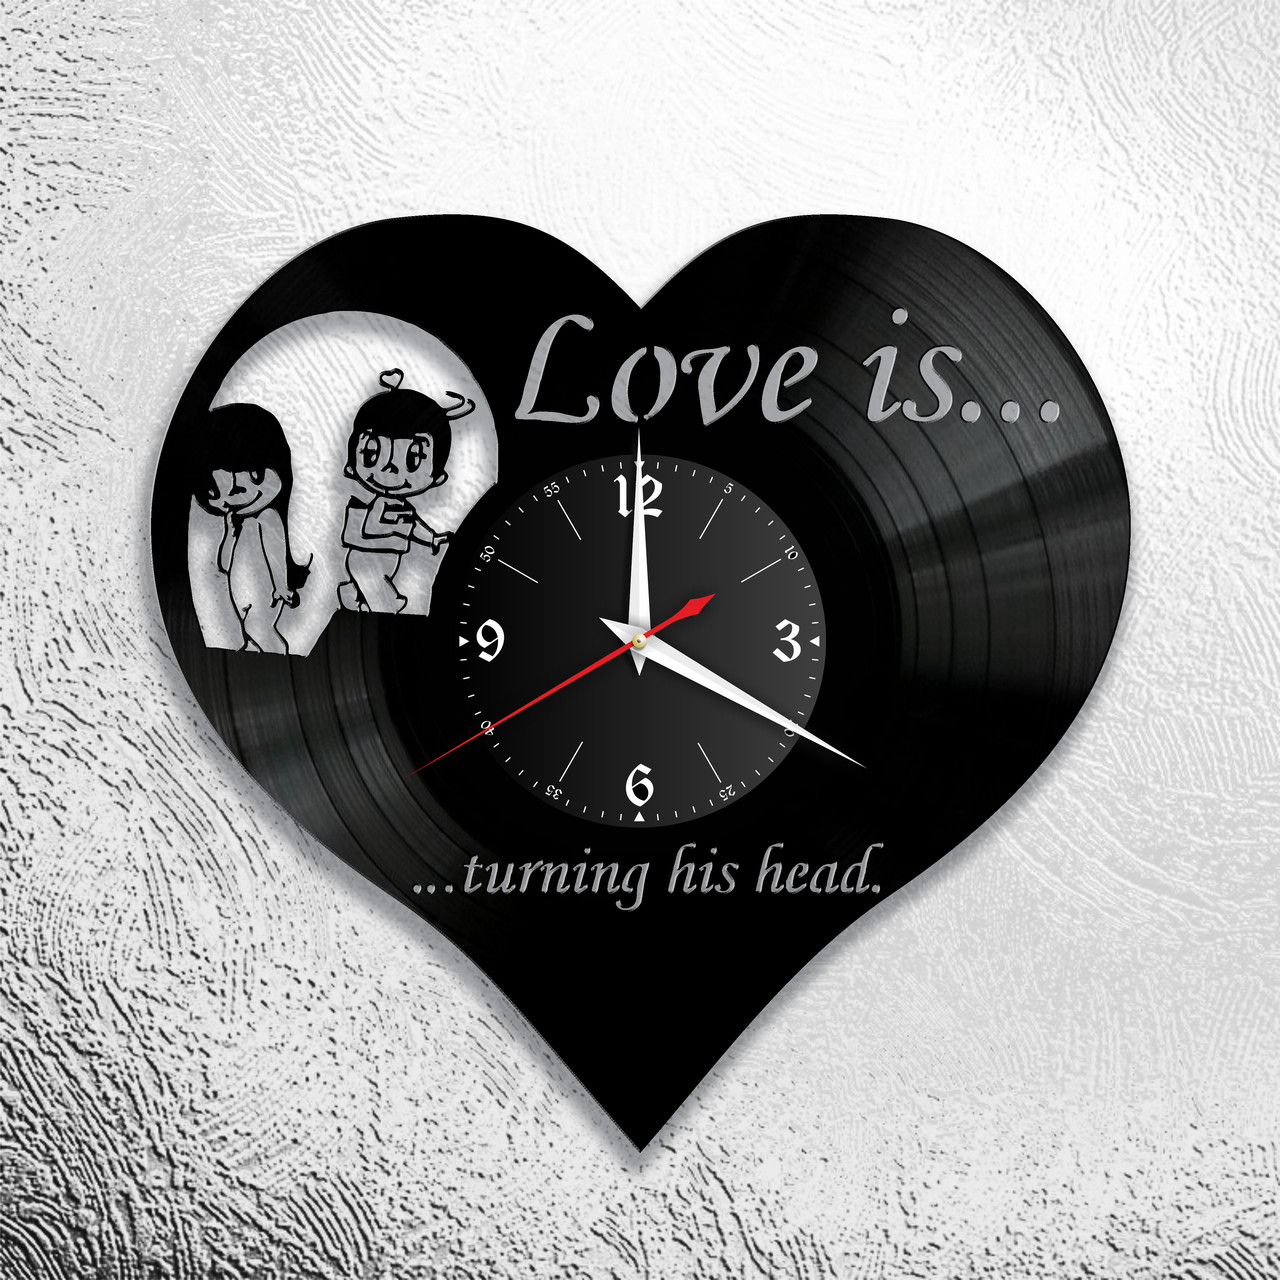 Оригинальные часы из виниловых пластинок "Любовь" версия 2  love is